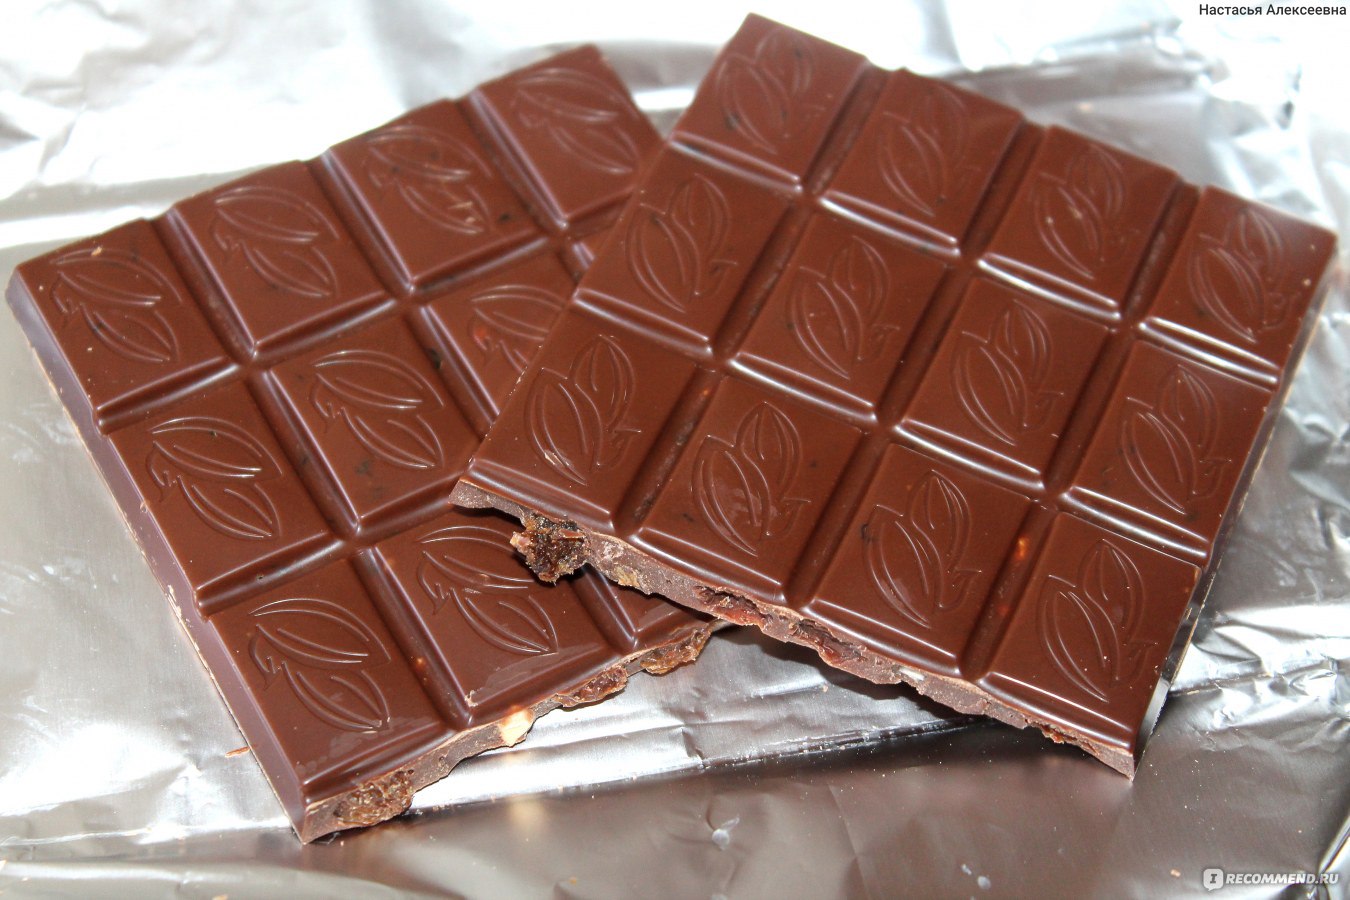 Шоколадки из России